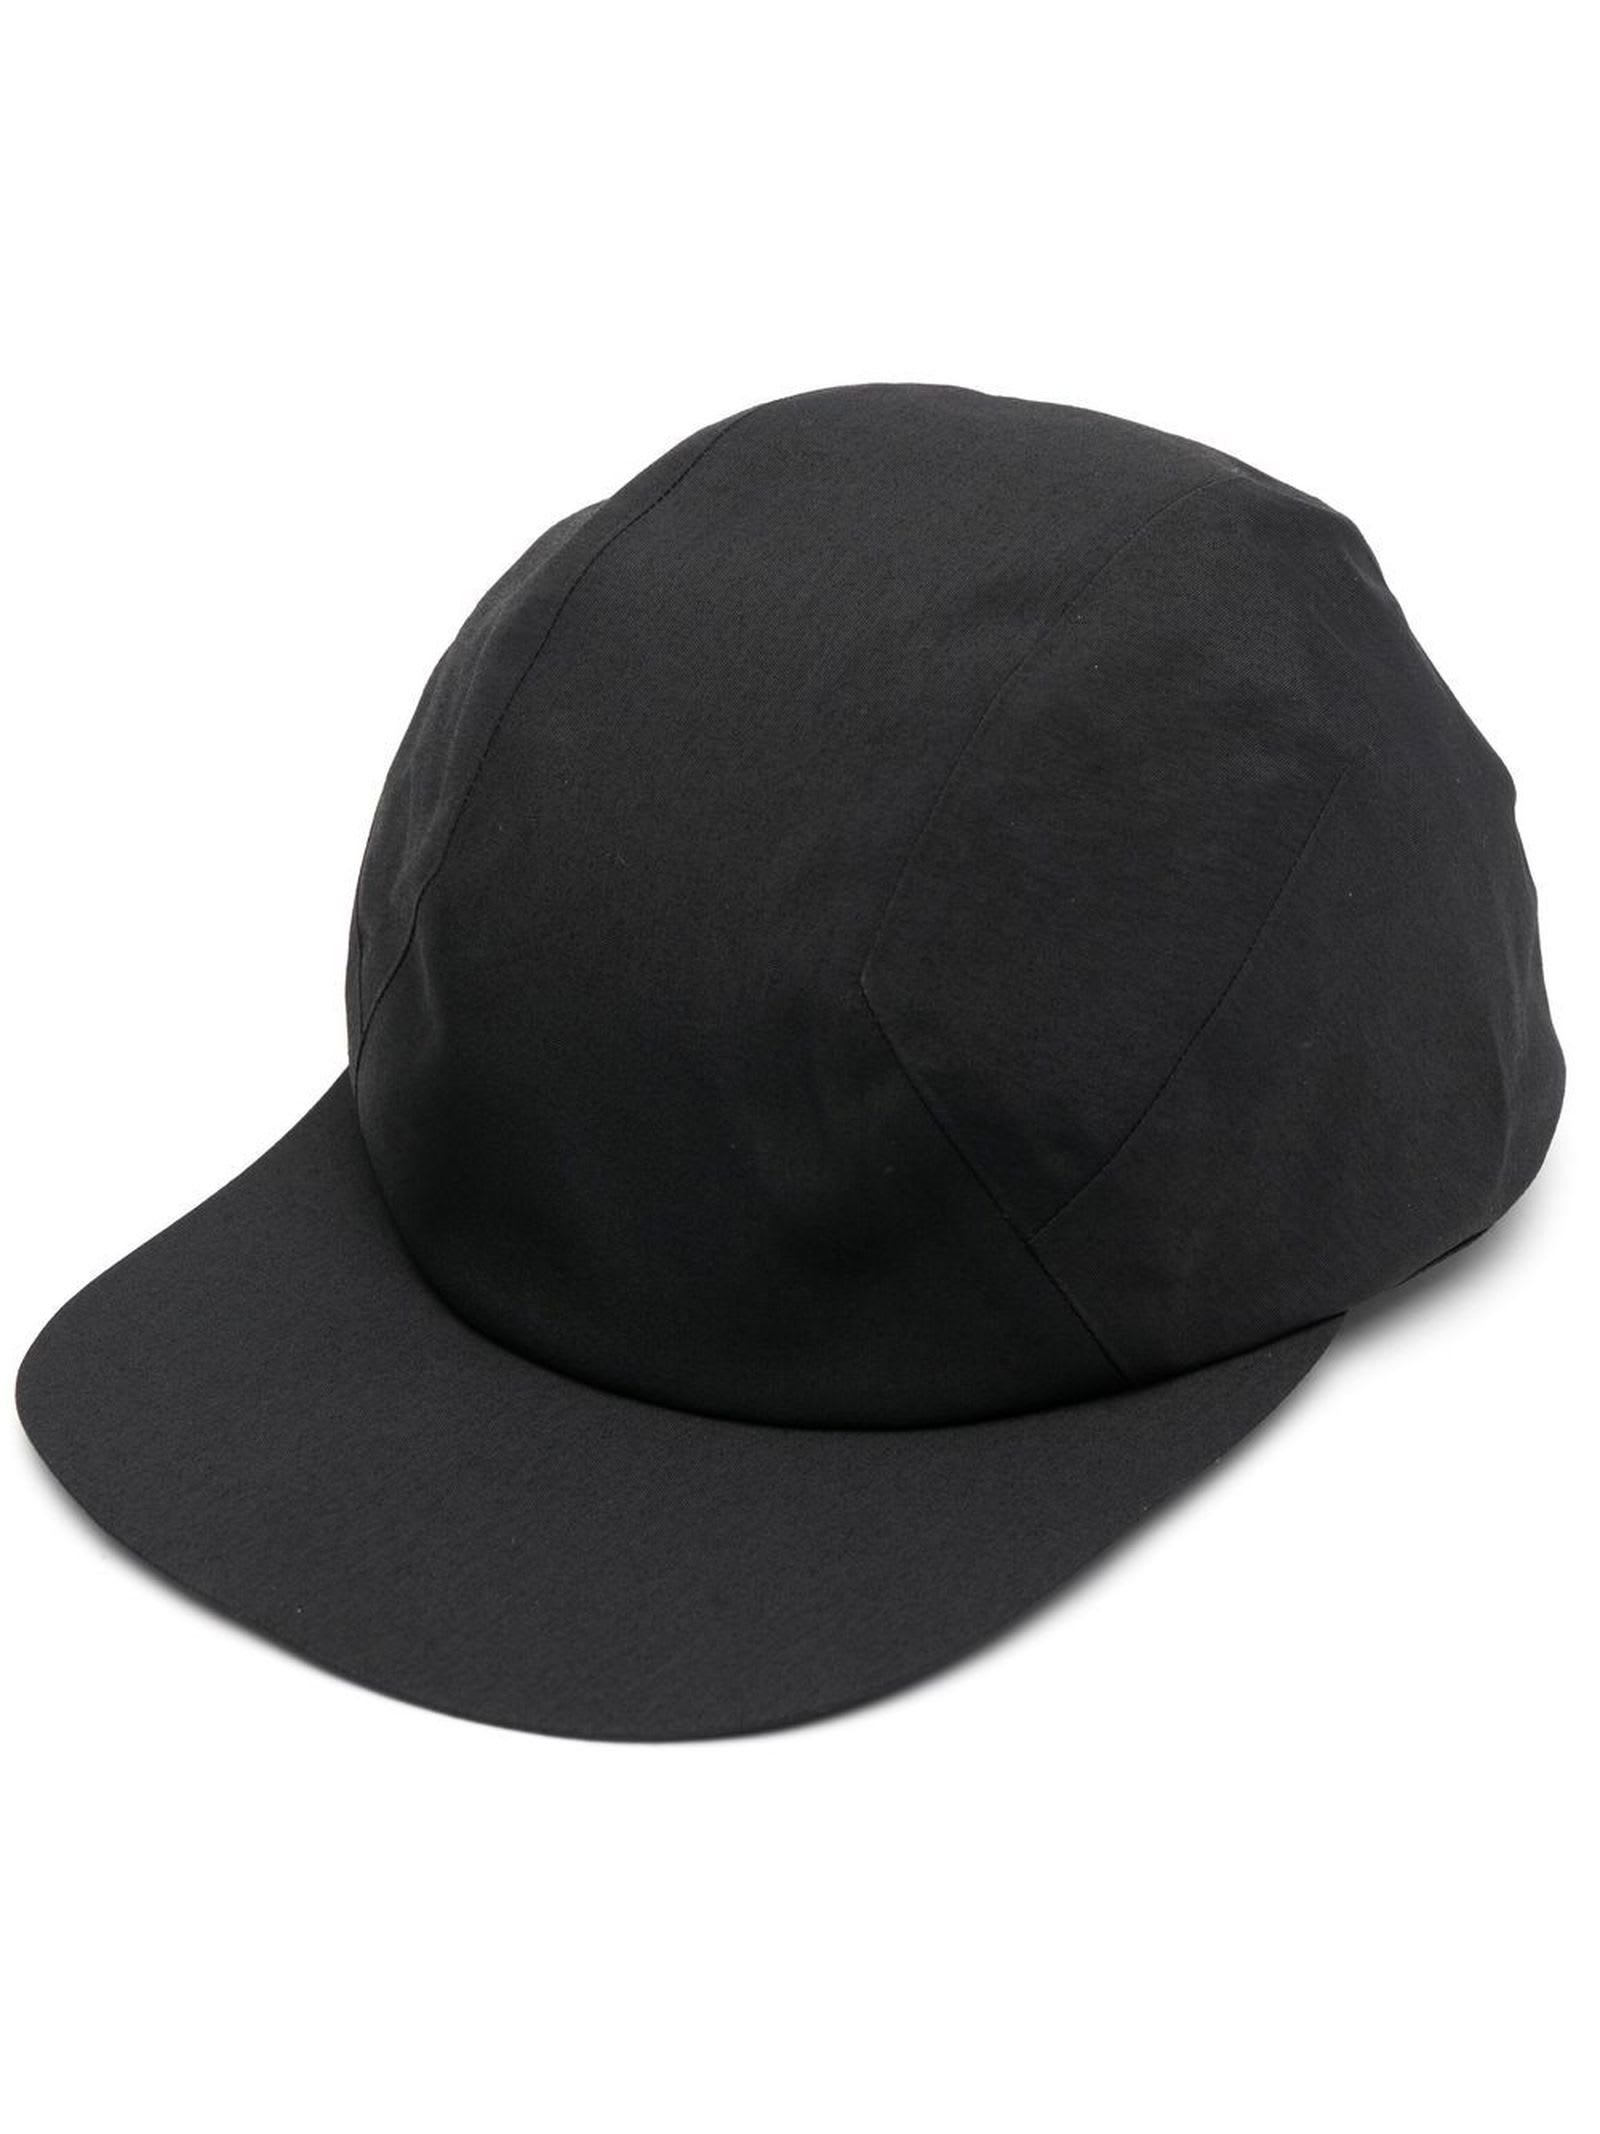 Shop Arc'teryx Black Plain Baseball Cap